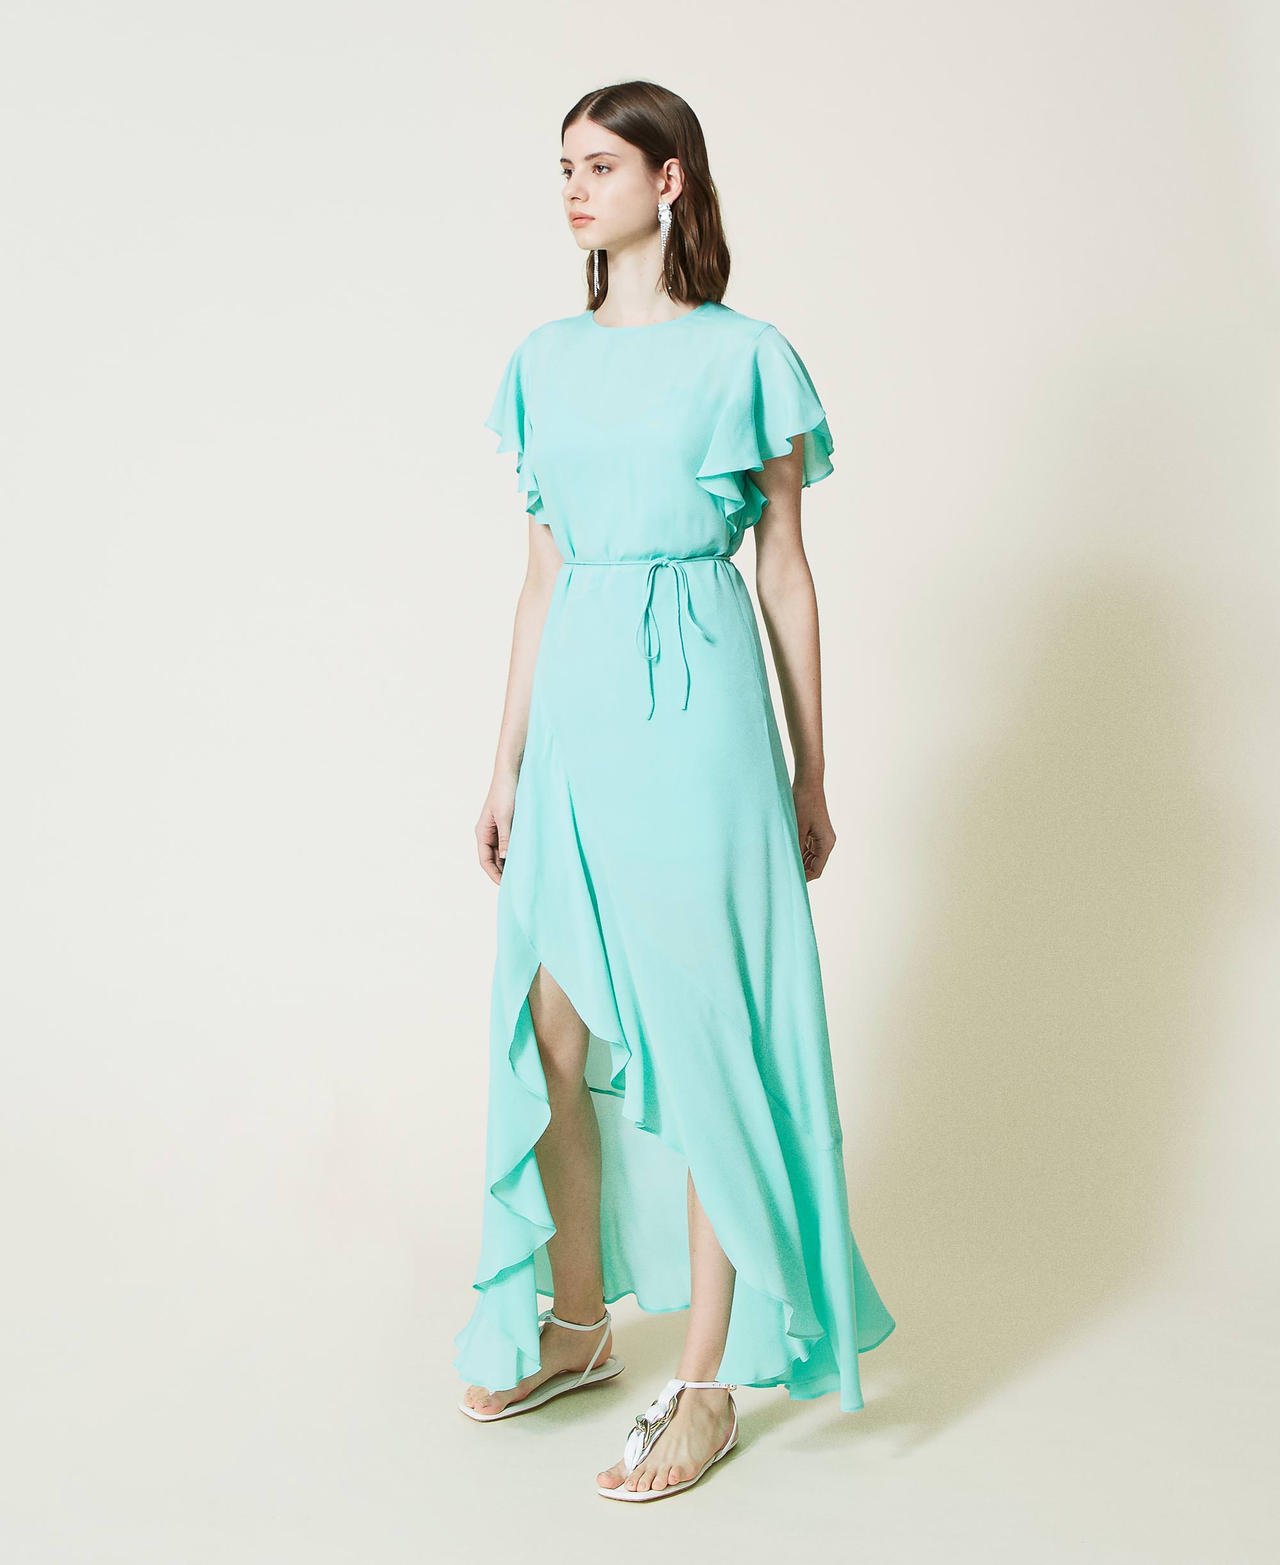 Silk blend long dress with ruffle Opaline Woman 221TP2465-02